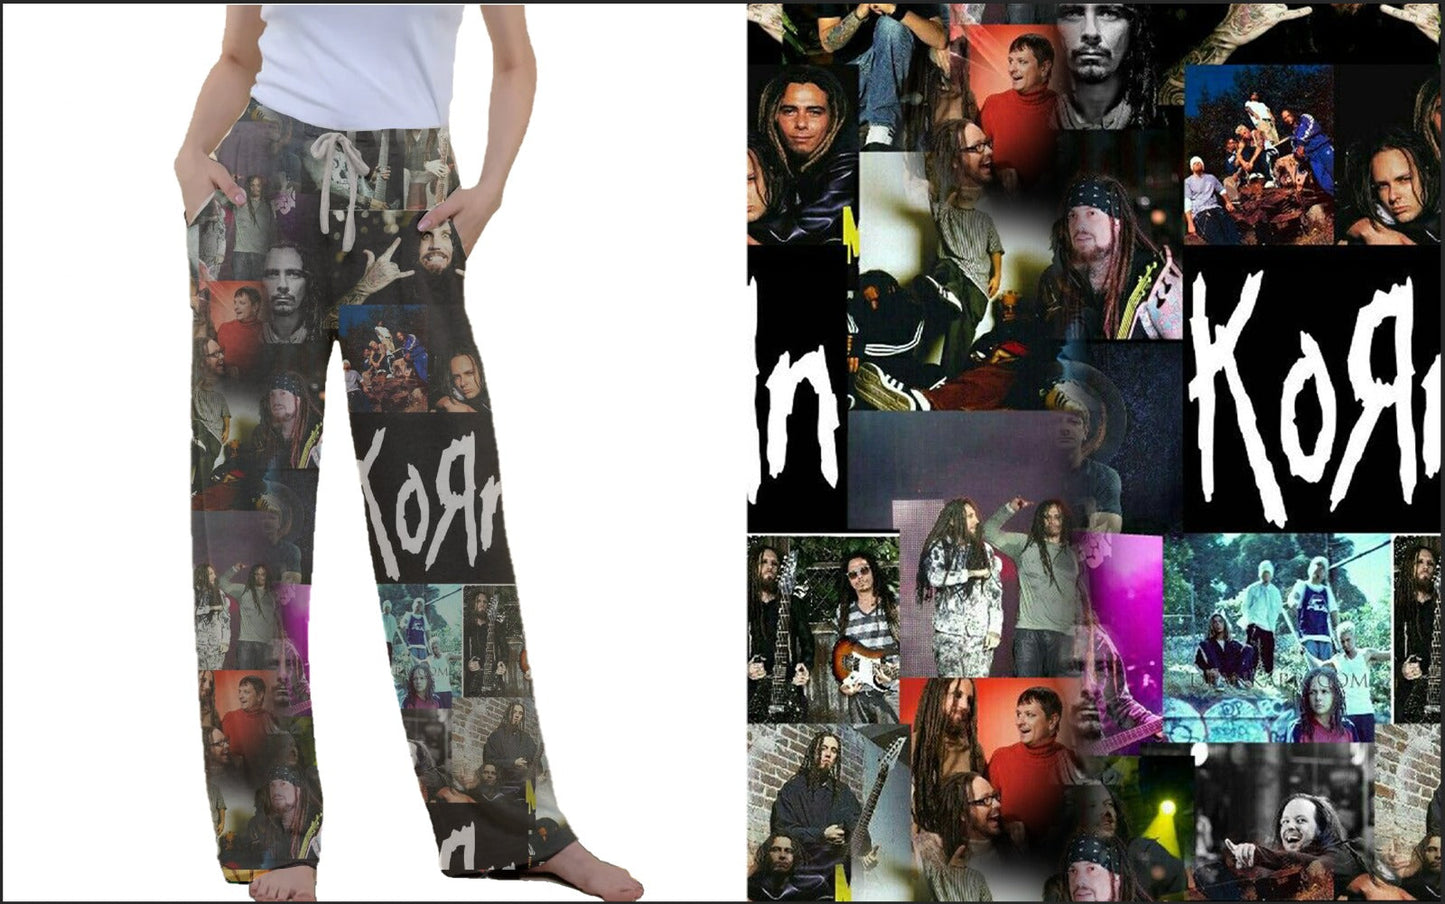 Korn leggings, Capris, Lounge Pants and Joggers